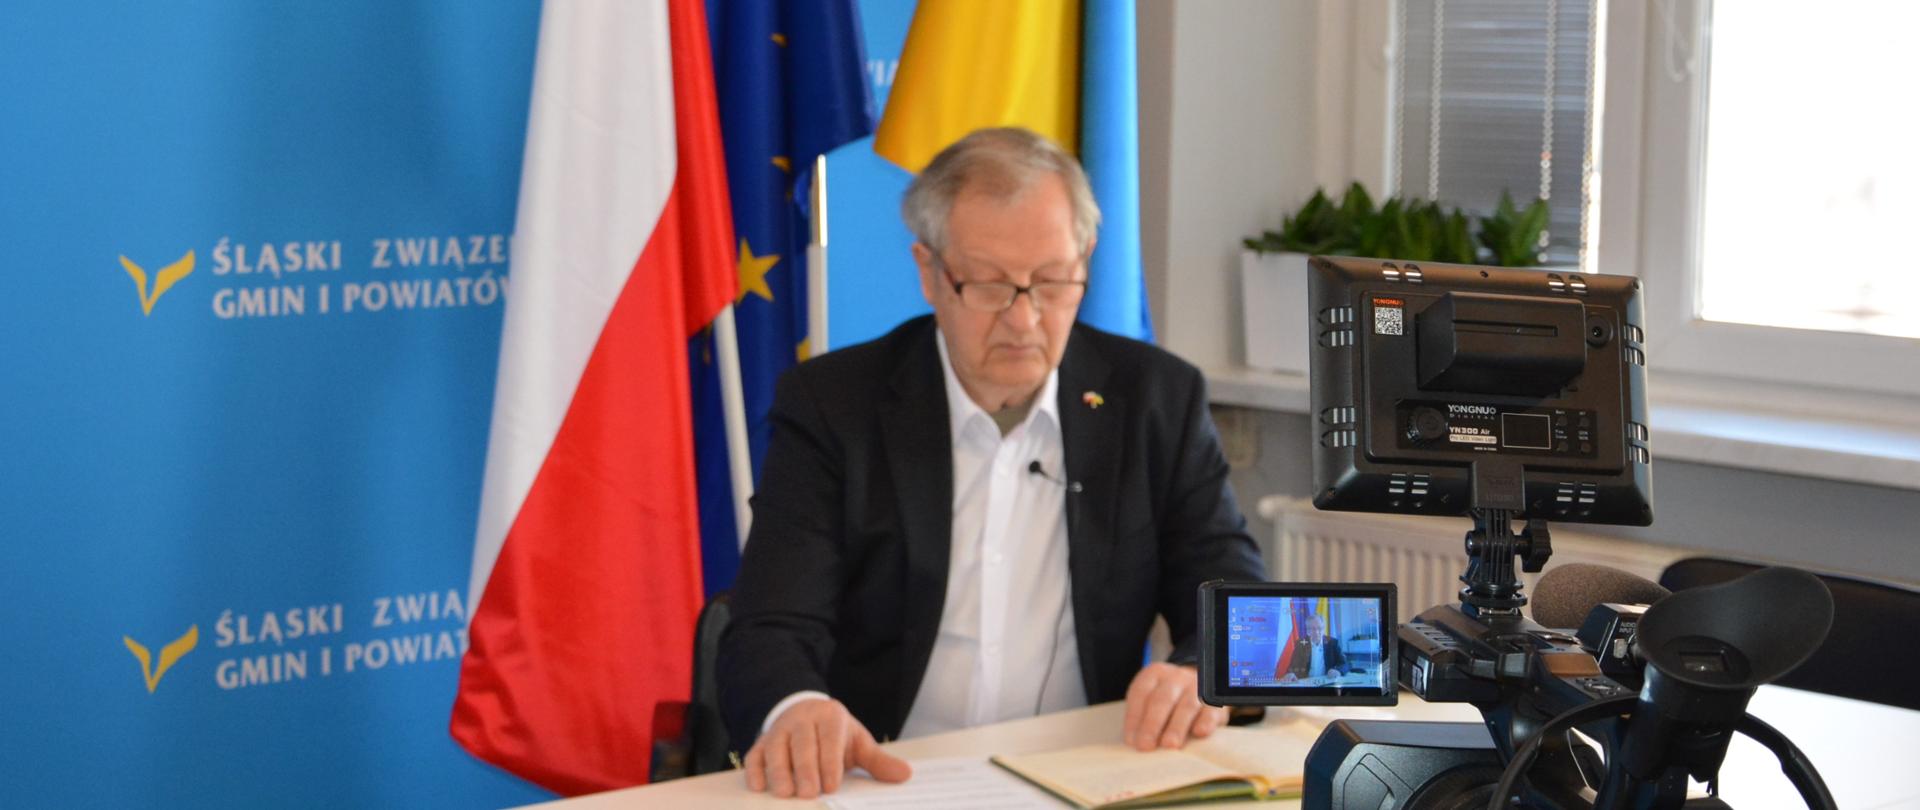 Mężczyzna (Garri Martin) siedzi przy stole i przegląda notes, kalendarz. Zdarzenie nagrywa widoczna na pierwszym planie kamera. w tle widoczna jest flaga Polski, Unii Europejskiej oraz Ukrainy.